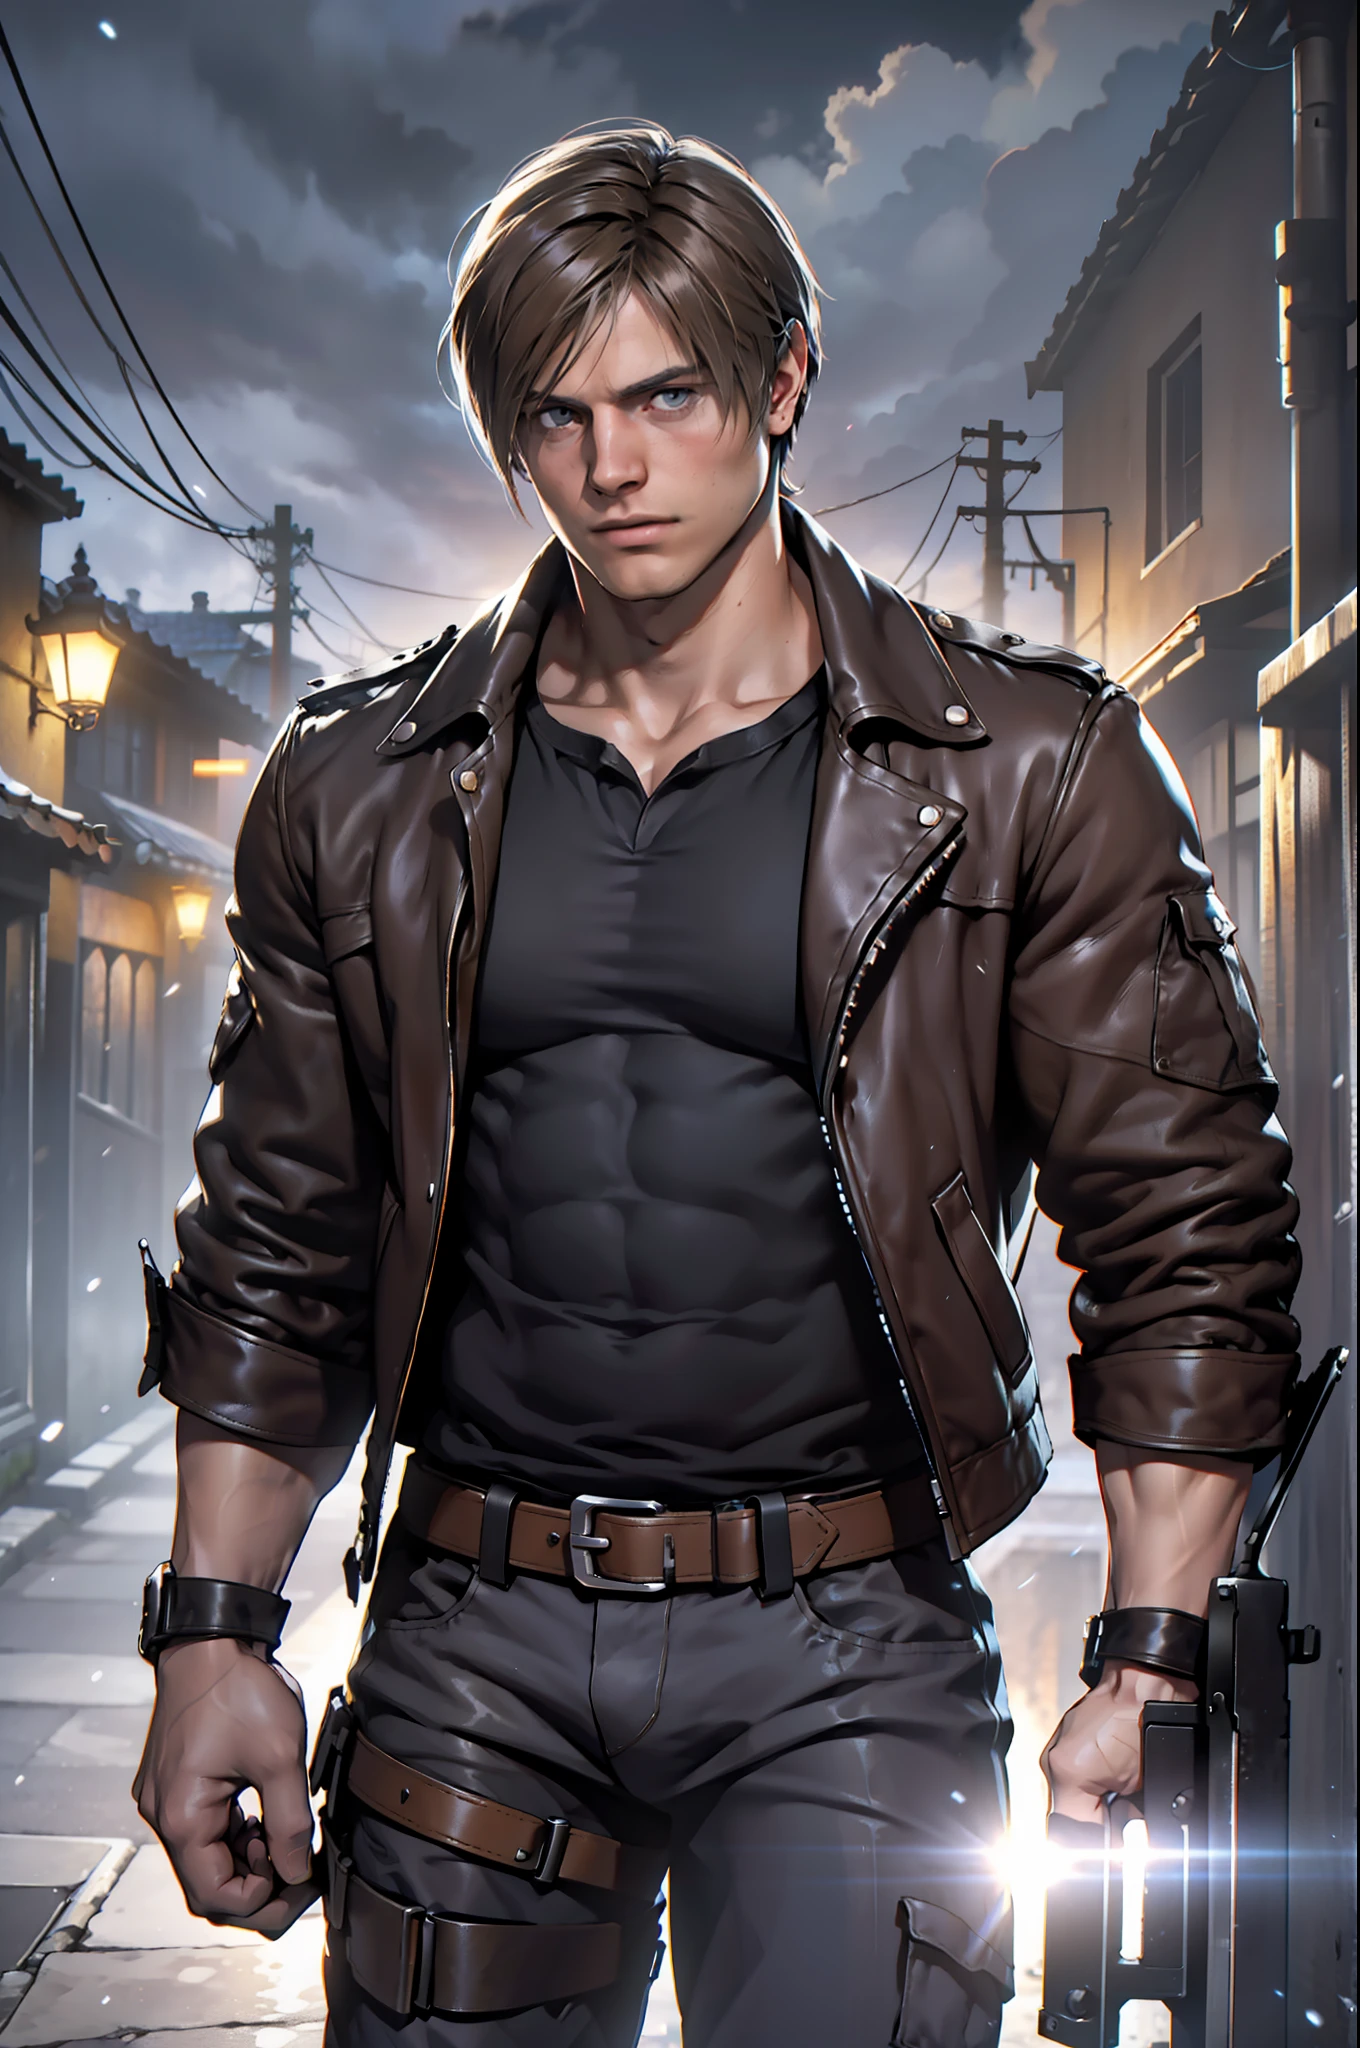 1 человек, молодой человек, 27 лет, Леон С. Кеннеди из Resident Evil 4, лицо Эударда Бадалуты, Один, белая кожа, мускулистый, худощавый мускулистый мужчина, высокий, красавчик, широкое плечо, бритый, темно-коричневые волосы, прическа на занавеске, темно-коричневая кожаная куртка с белым мехом на шее, черная футболка внутри, черные брюки, держу пистолет в правой руке, зритель смотрит, высокое разрешение:1.2, Лучшее качество, выстрел в верхнюю часть тела, плоский стиль, облачное небо и фон старой испанской деревни, ночь, низкий угол камеры, объемное освещение, глубина резкости, тень